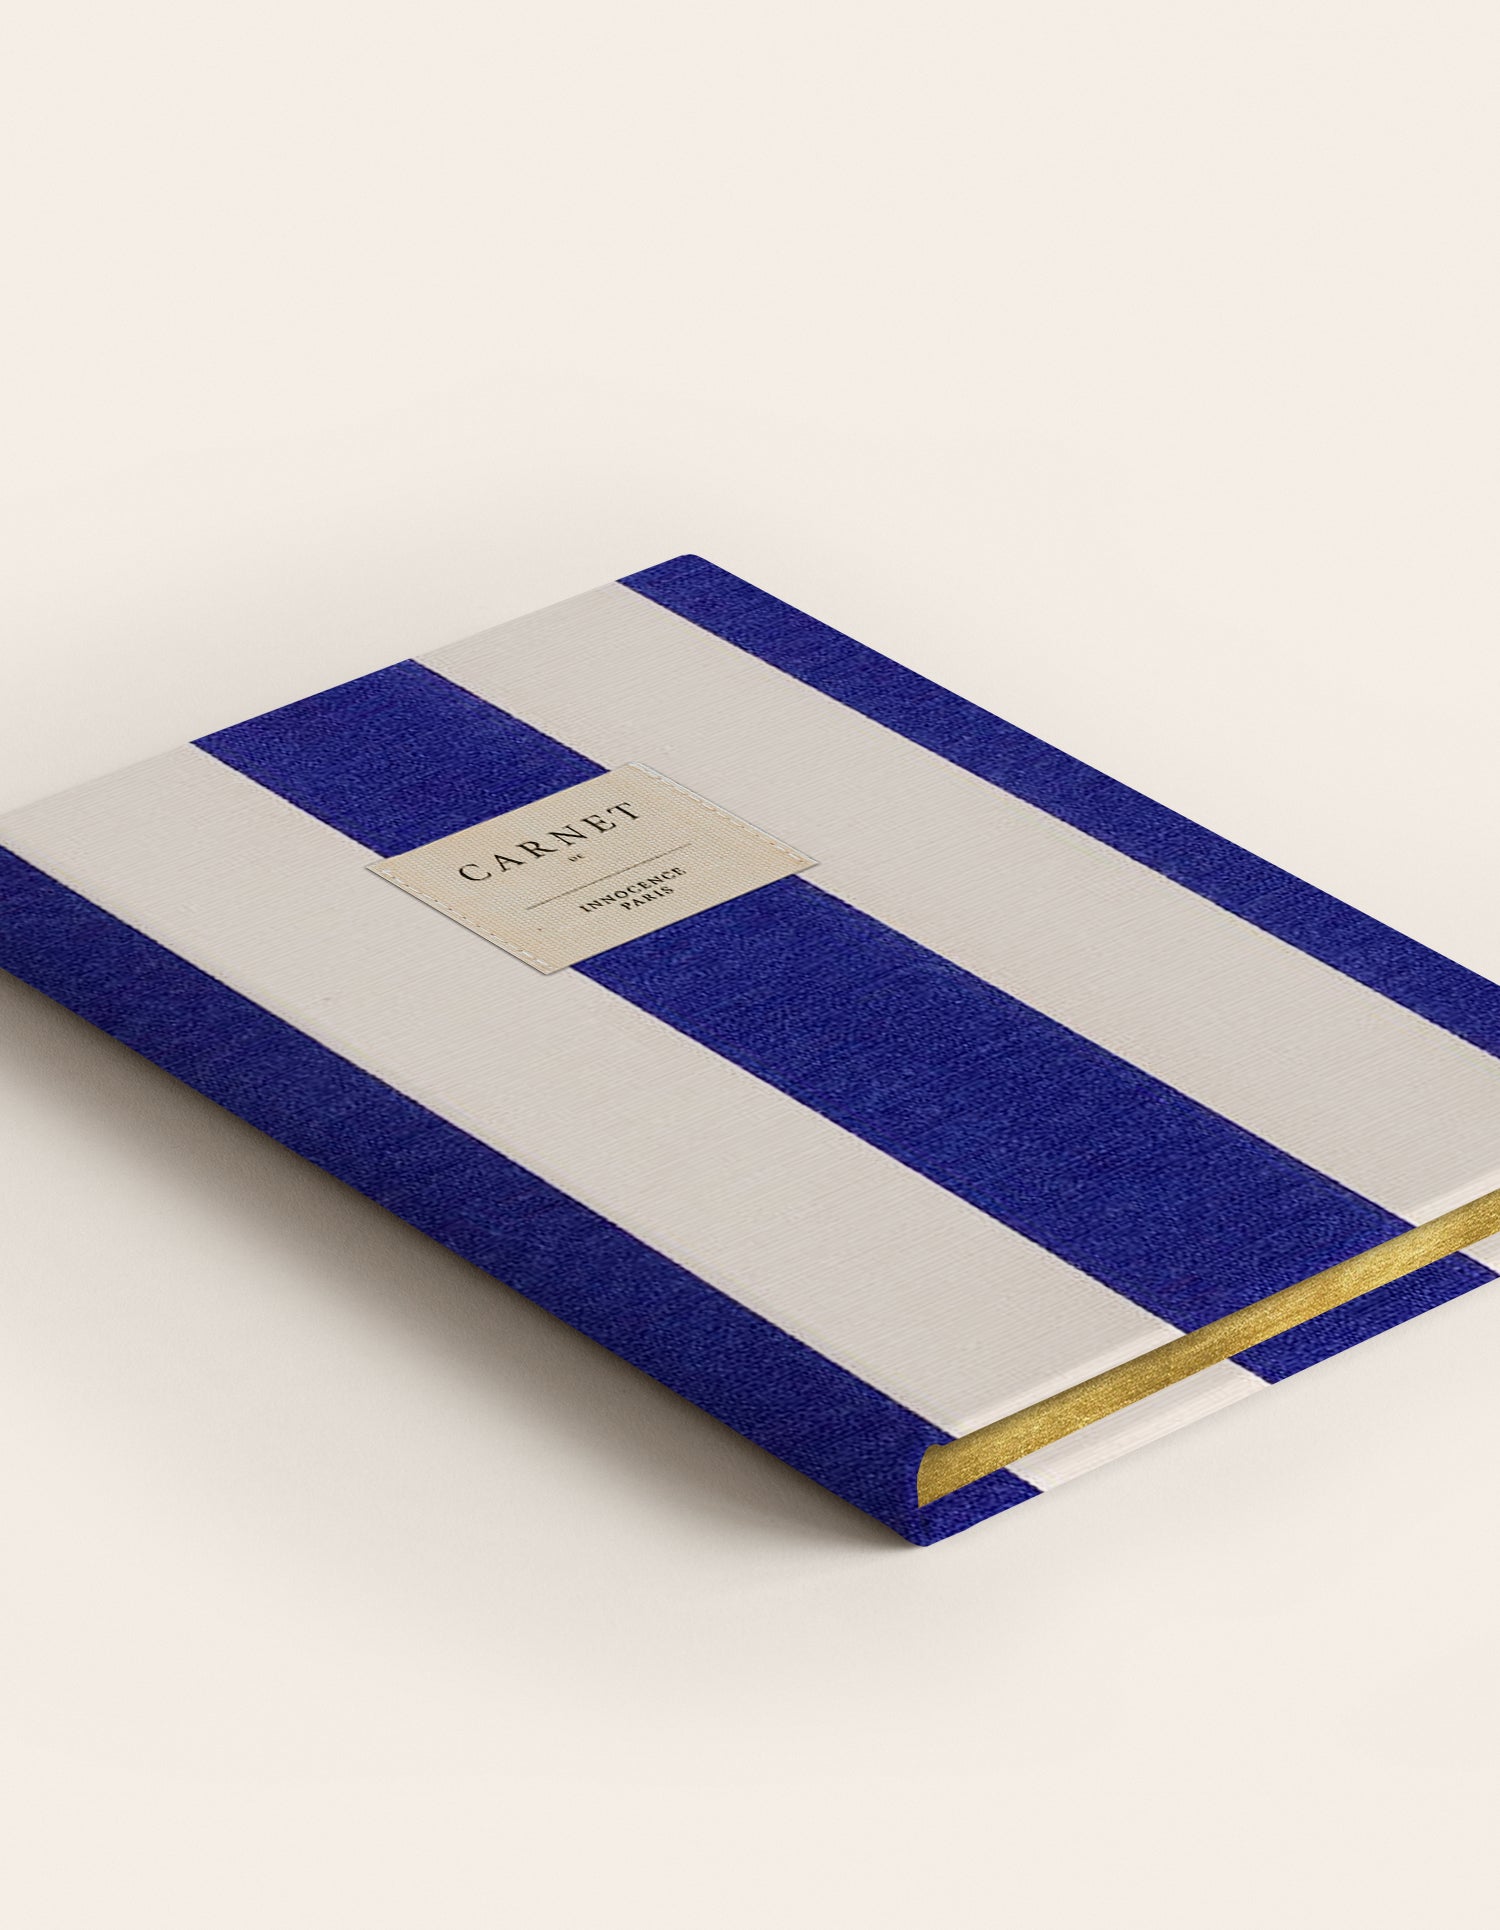 Ocean blue notebook